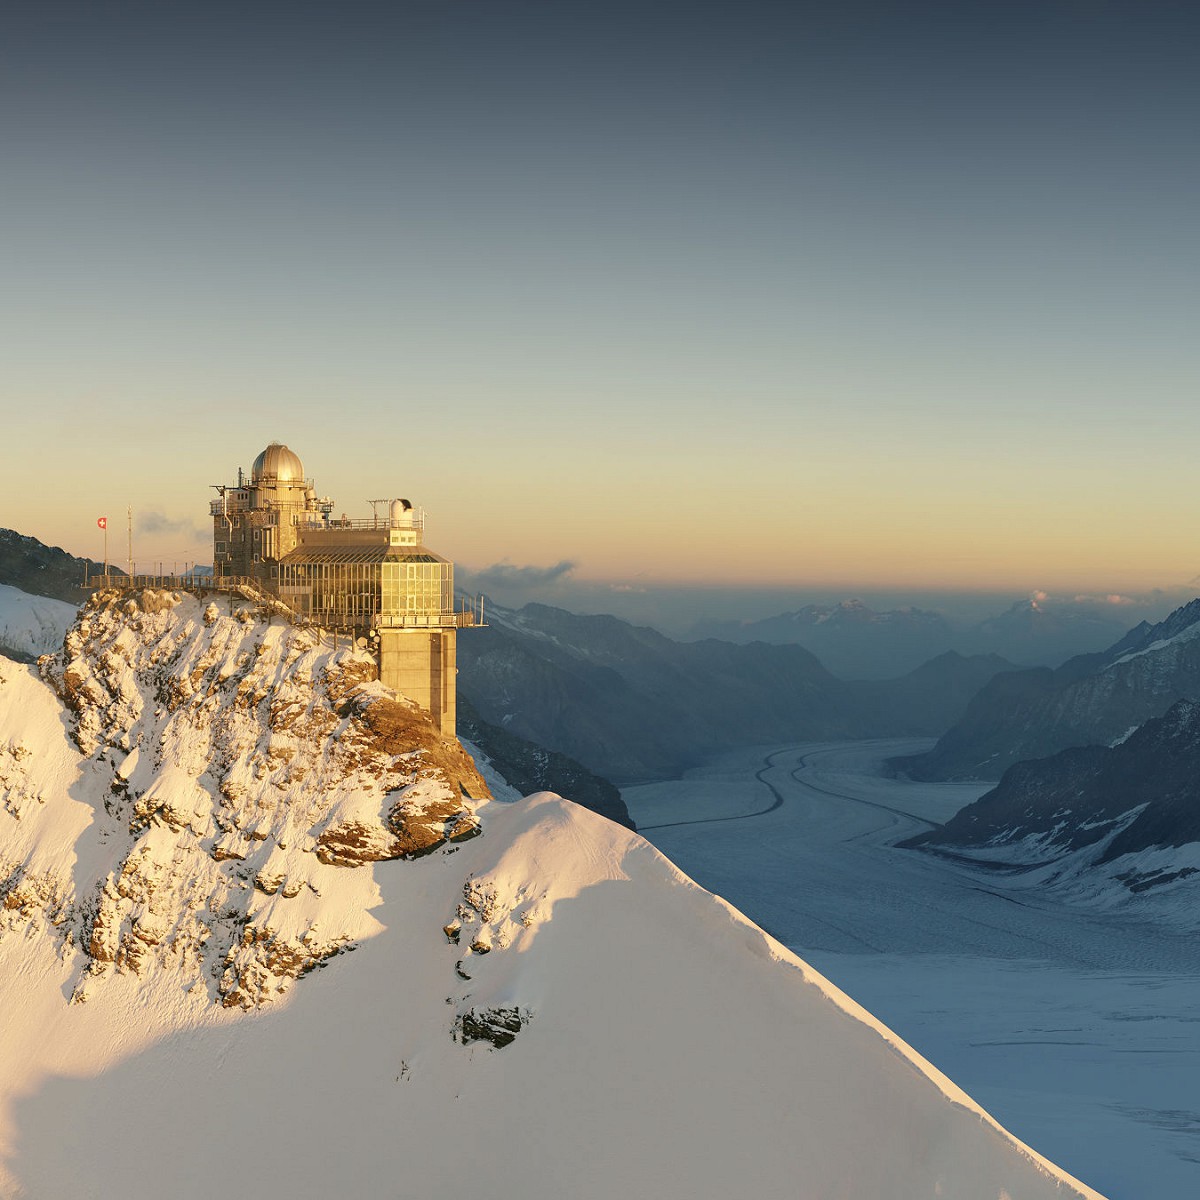 Jungfraujoch – Top of Europe